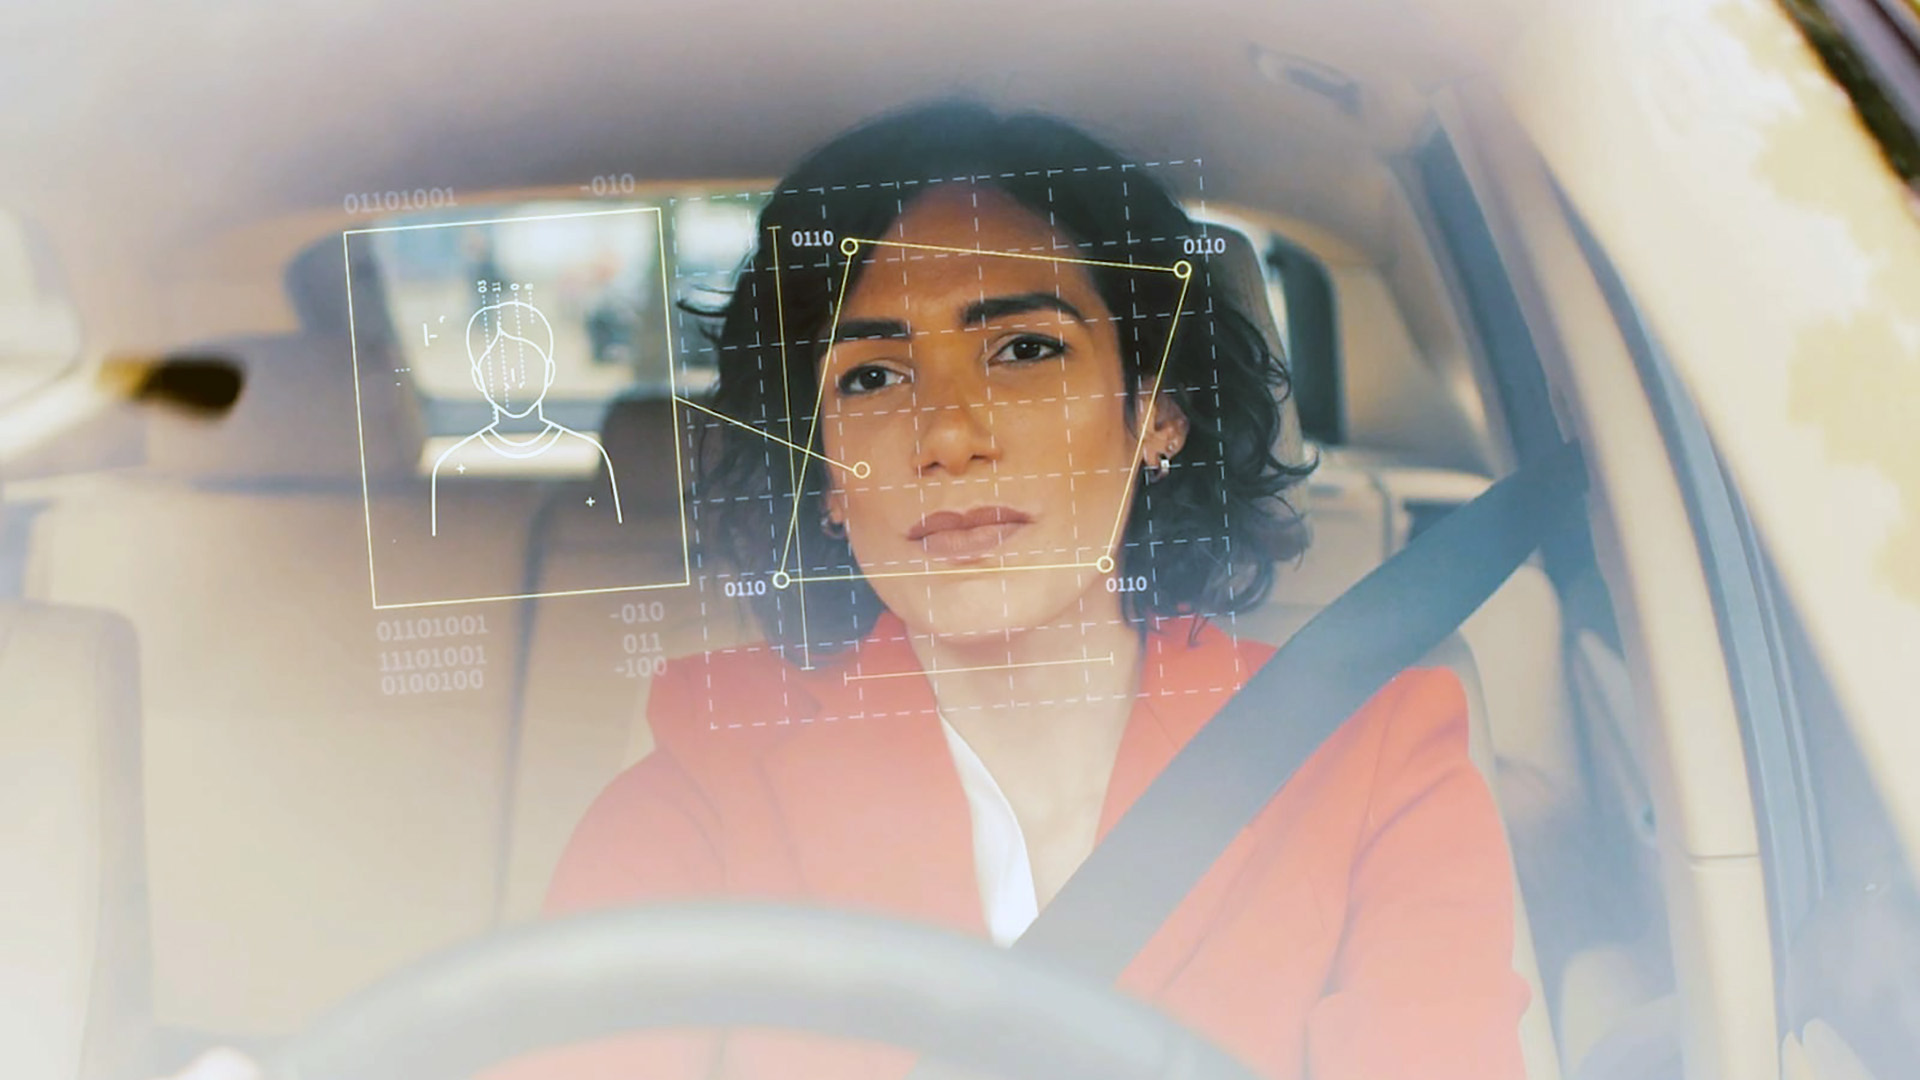 El monitoreo de los gestos del conductor es la última tecnología de Inteligencia Artificial para mejorar la seguridad vial, pero Polestar va un paso más adelante